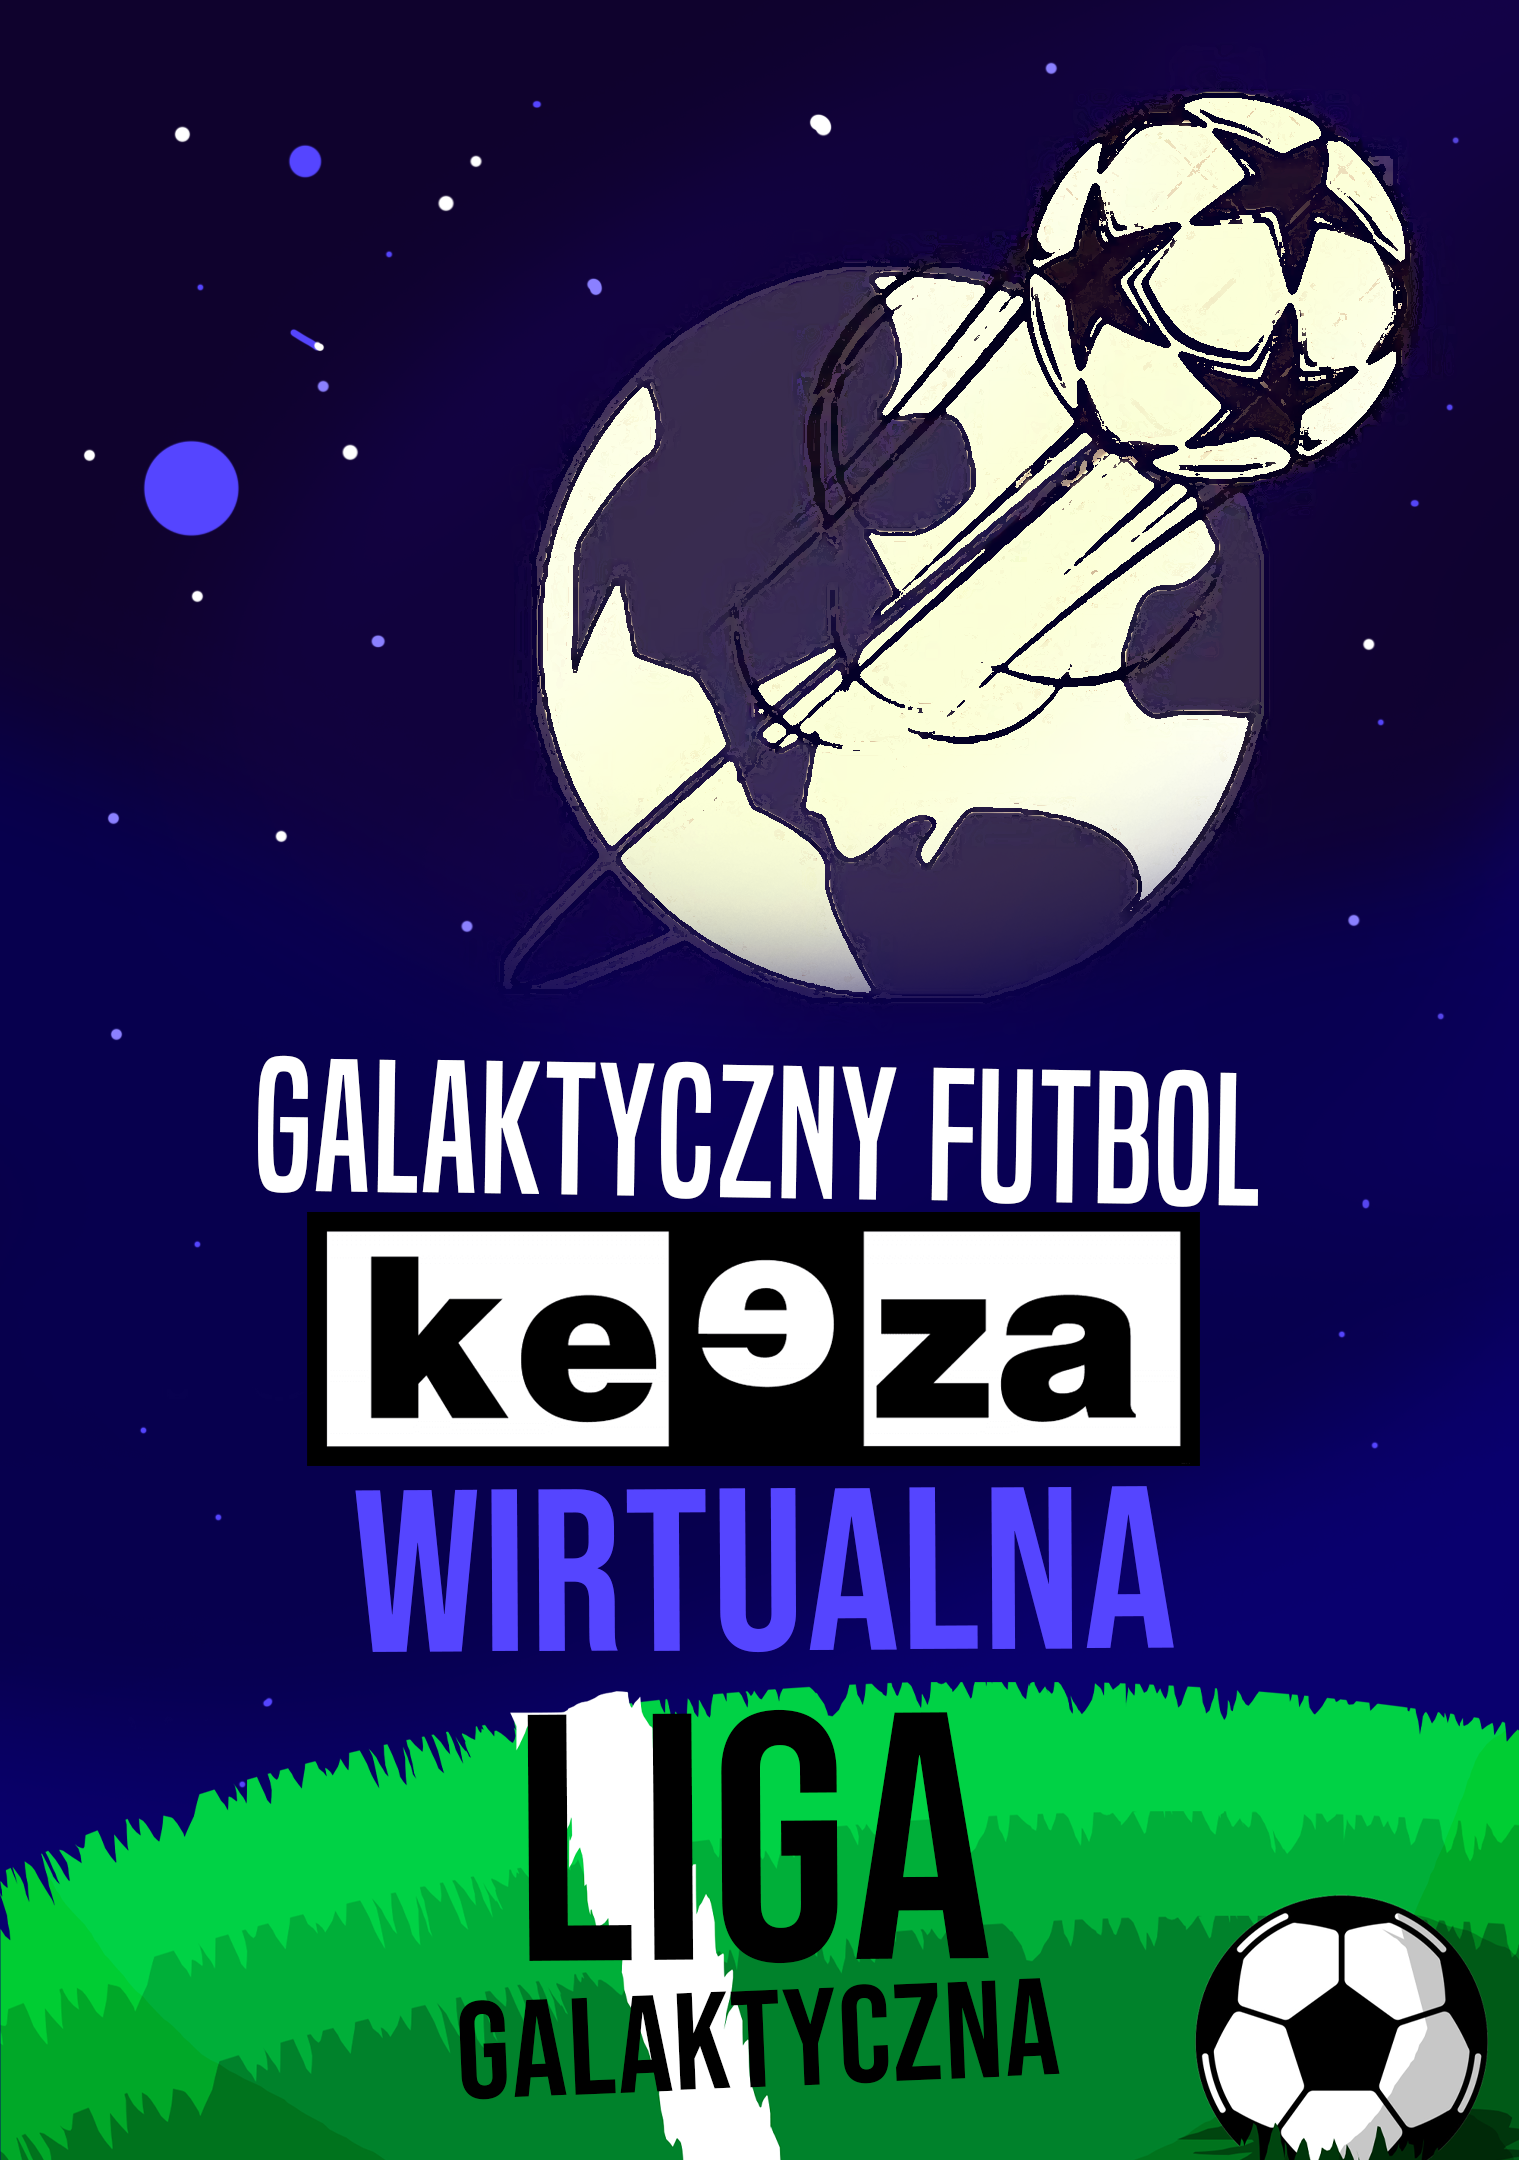 Wirtualna Liga Galaktyczna nabiera prestiżu. Partner portalu, firma KEEZA ufundowała nagrody dla najlepszych klubów